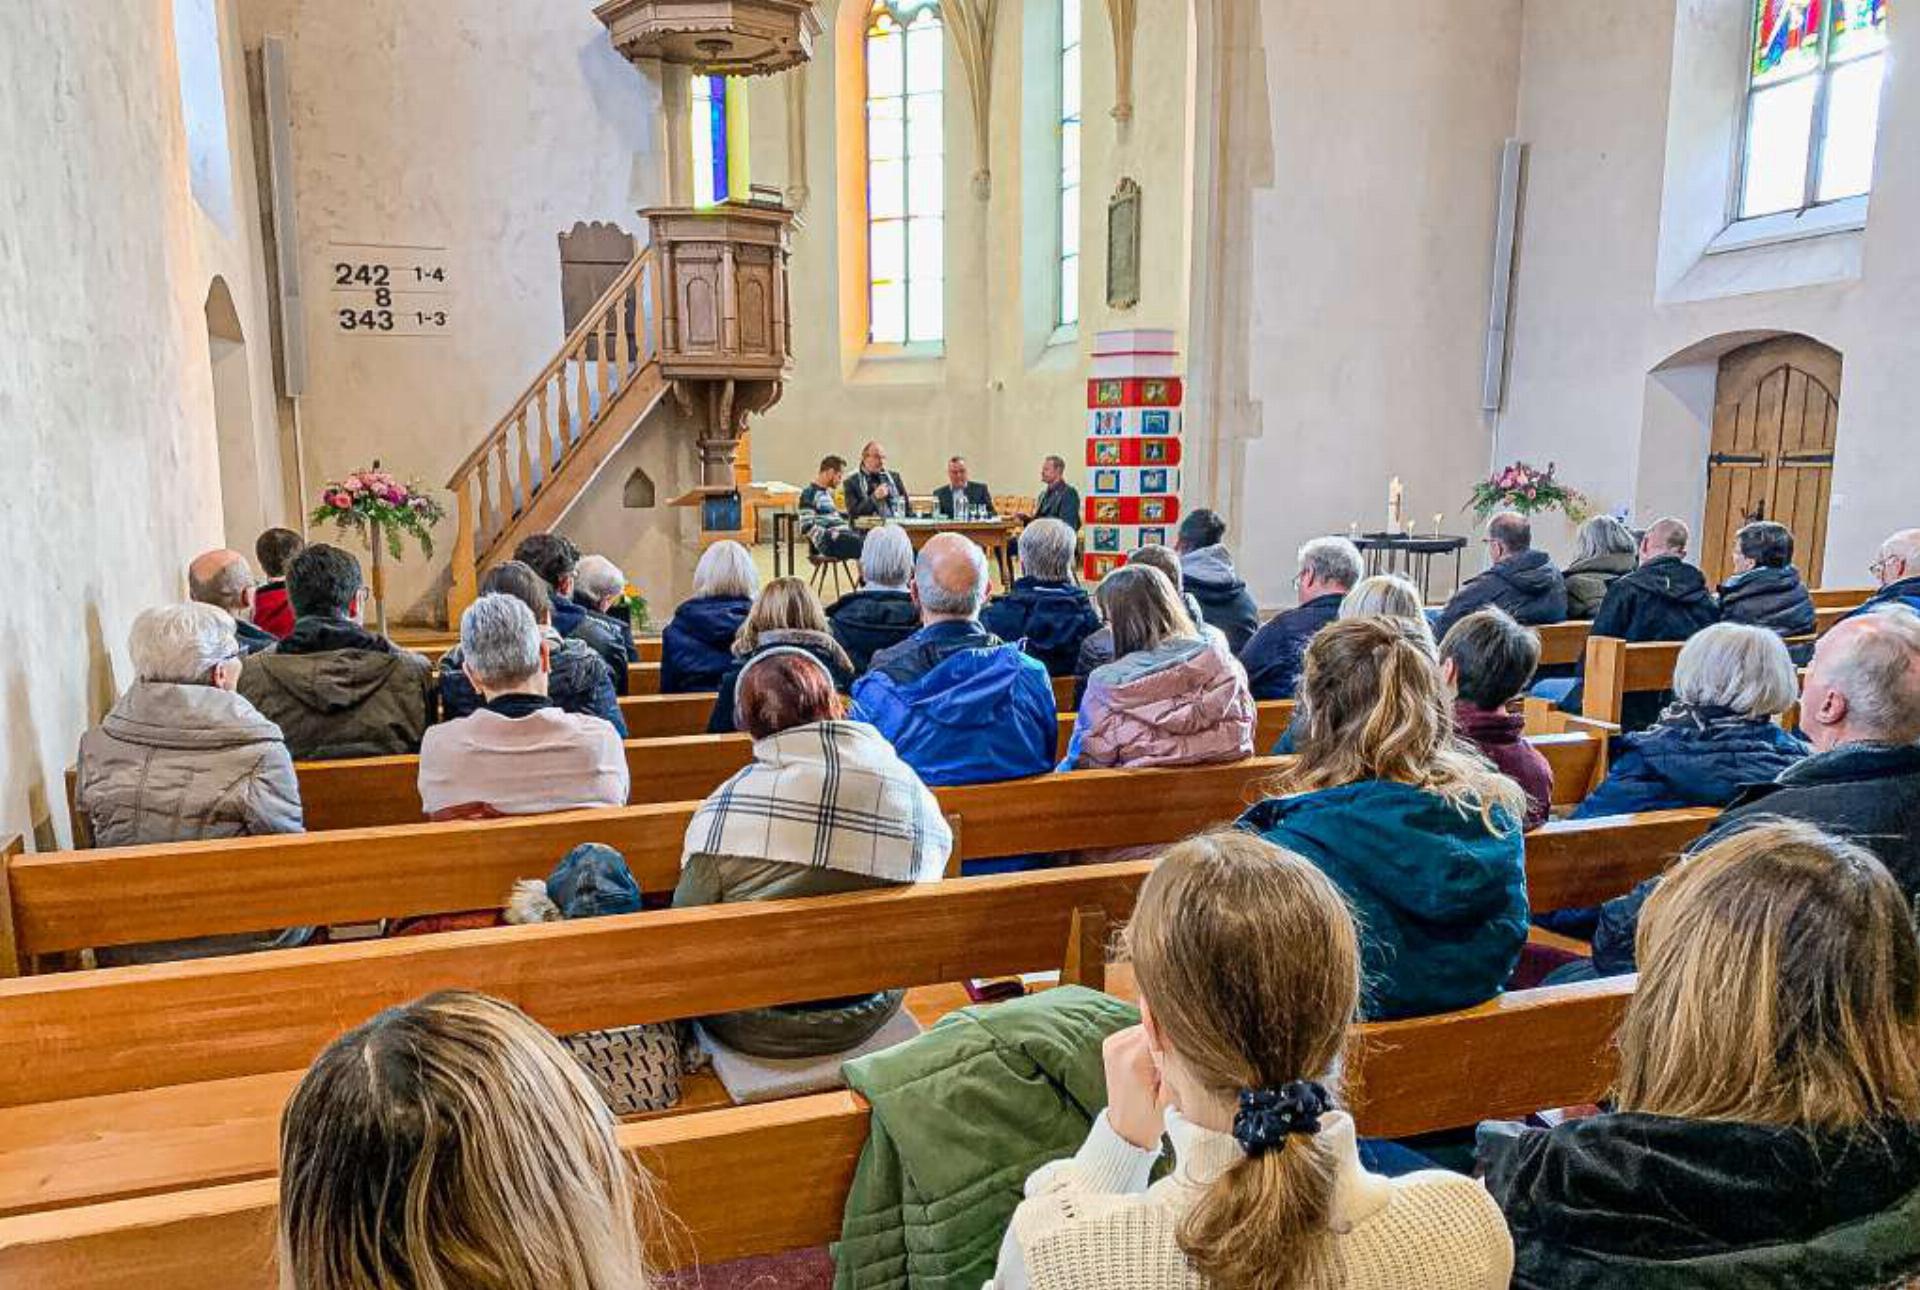 Römisch-katholische Pfarrei, Freikirche ICF und Bewegung Plus: Sie alle diskutierten über die Zukunft der Kirche. Bild fra.